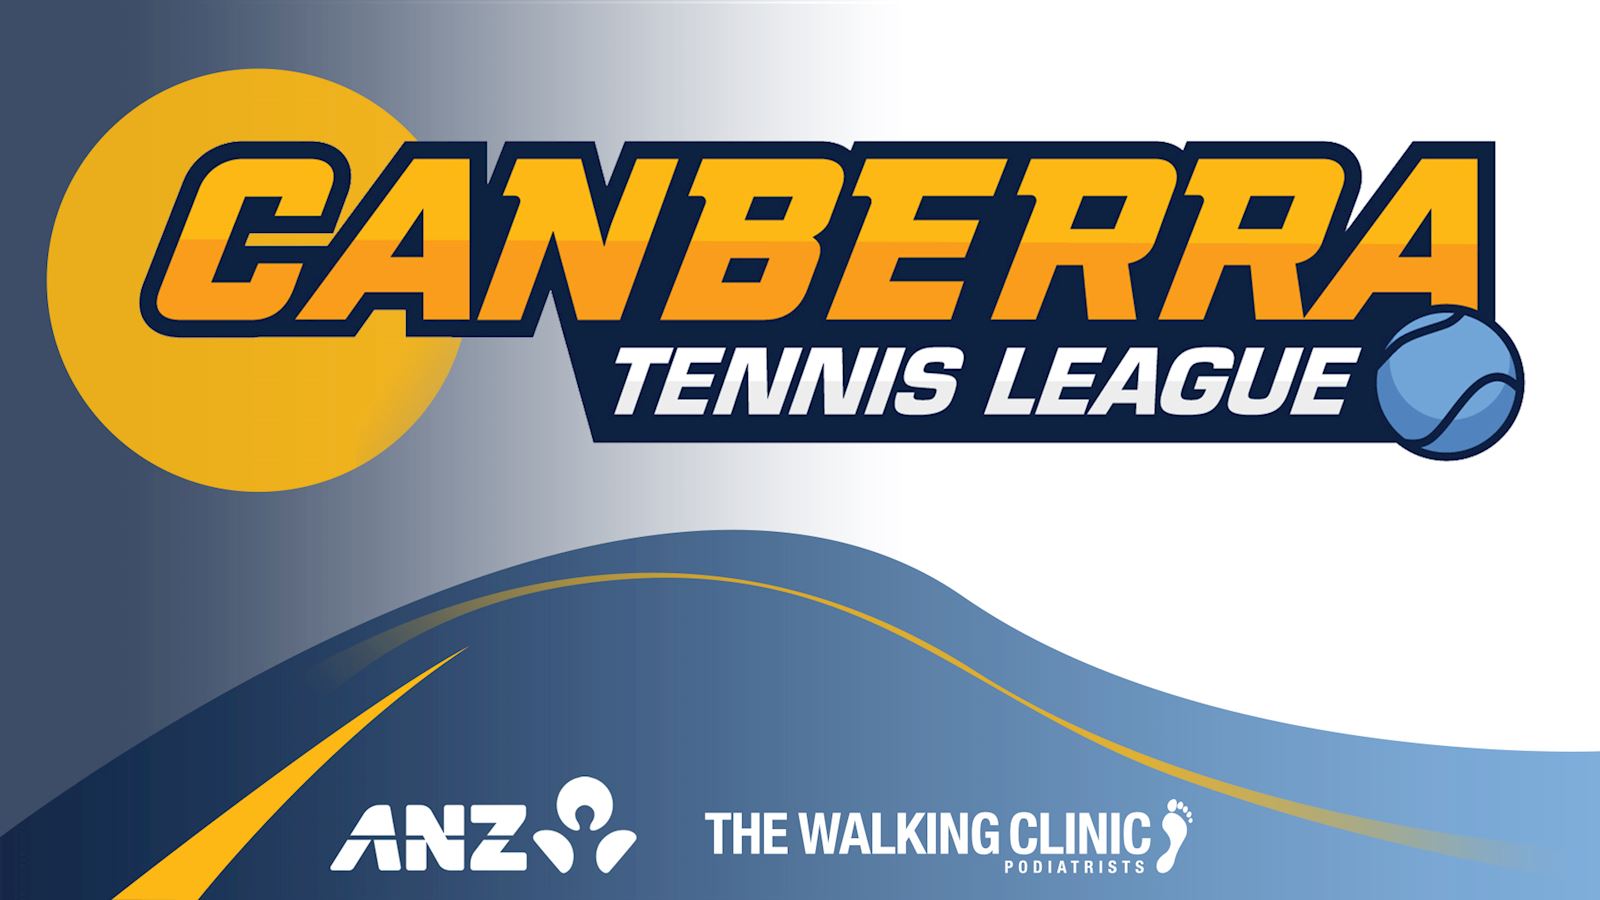 ClubSpark / Melba Tennis Club / Leagues Melba Tennis Club